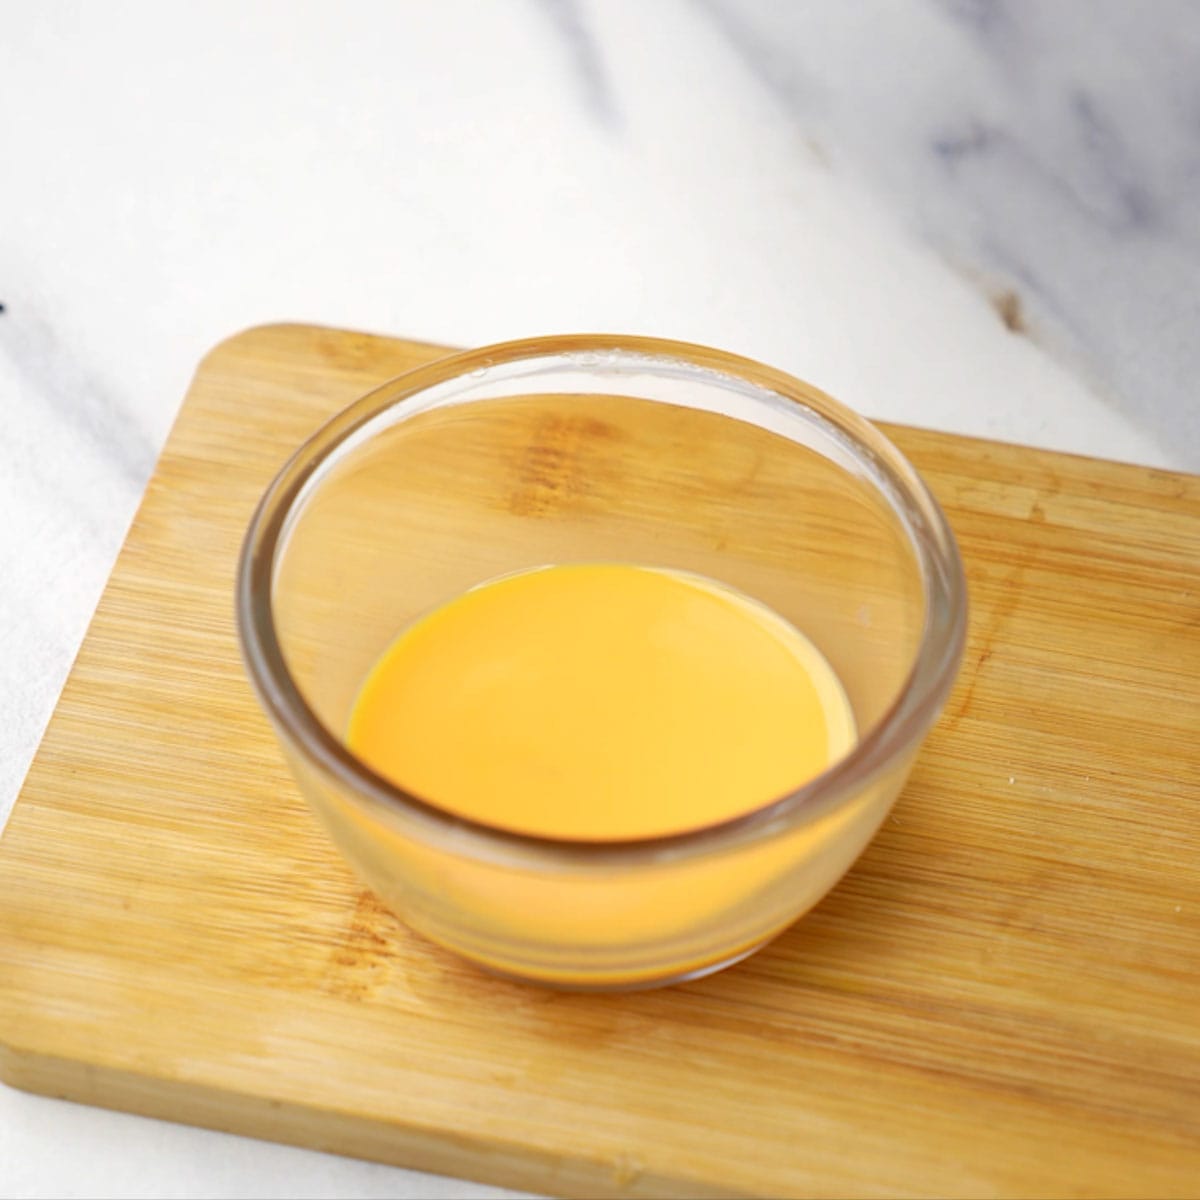 saffron milk in a small bowl